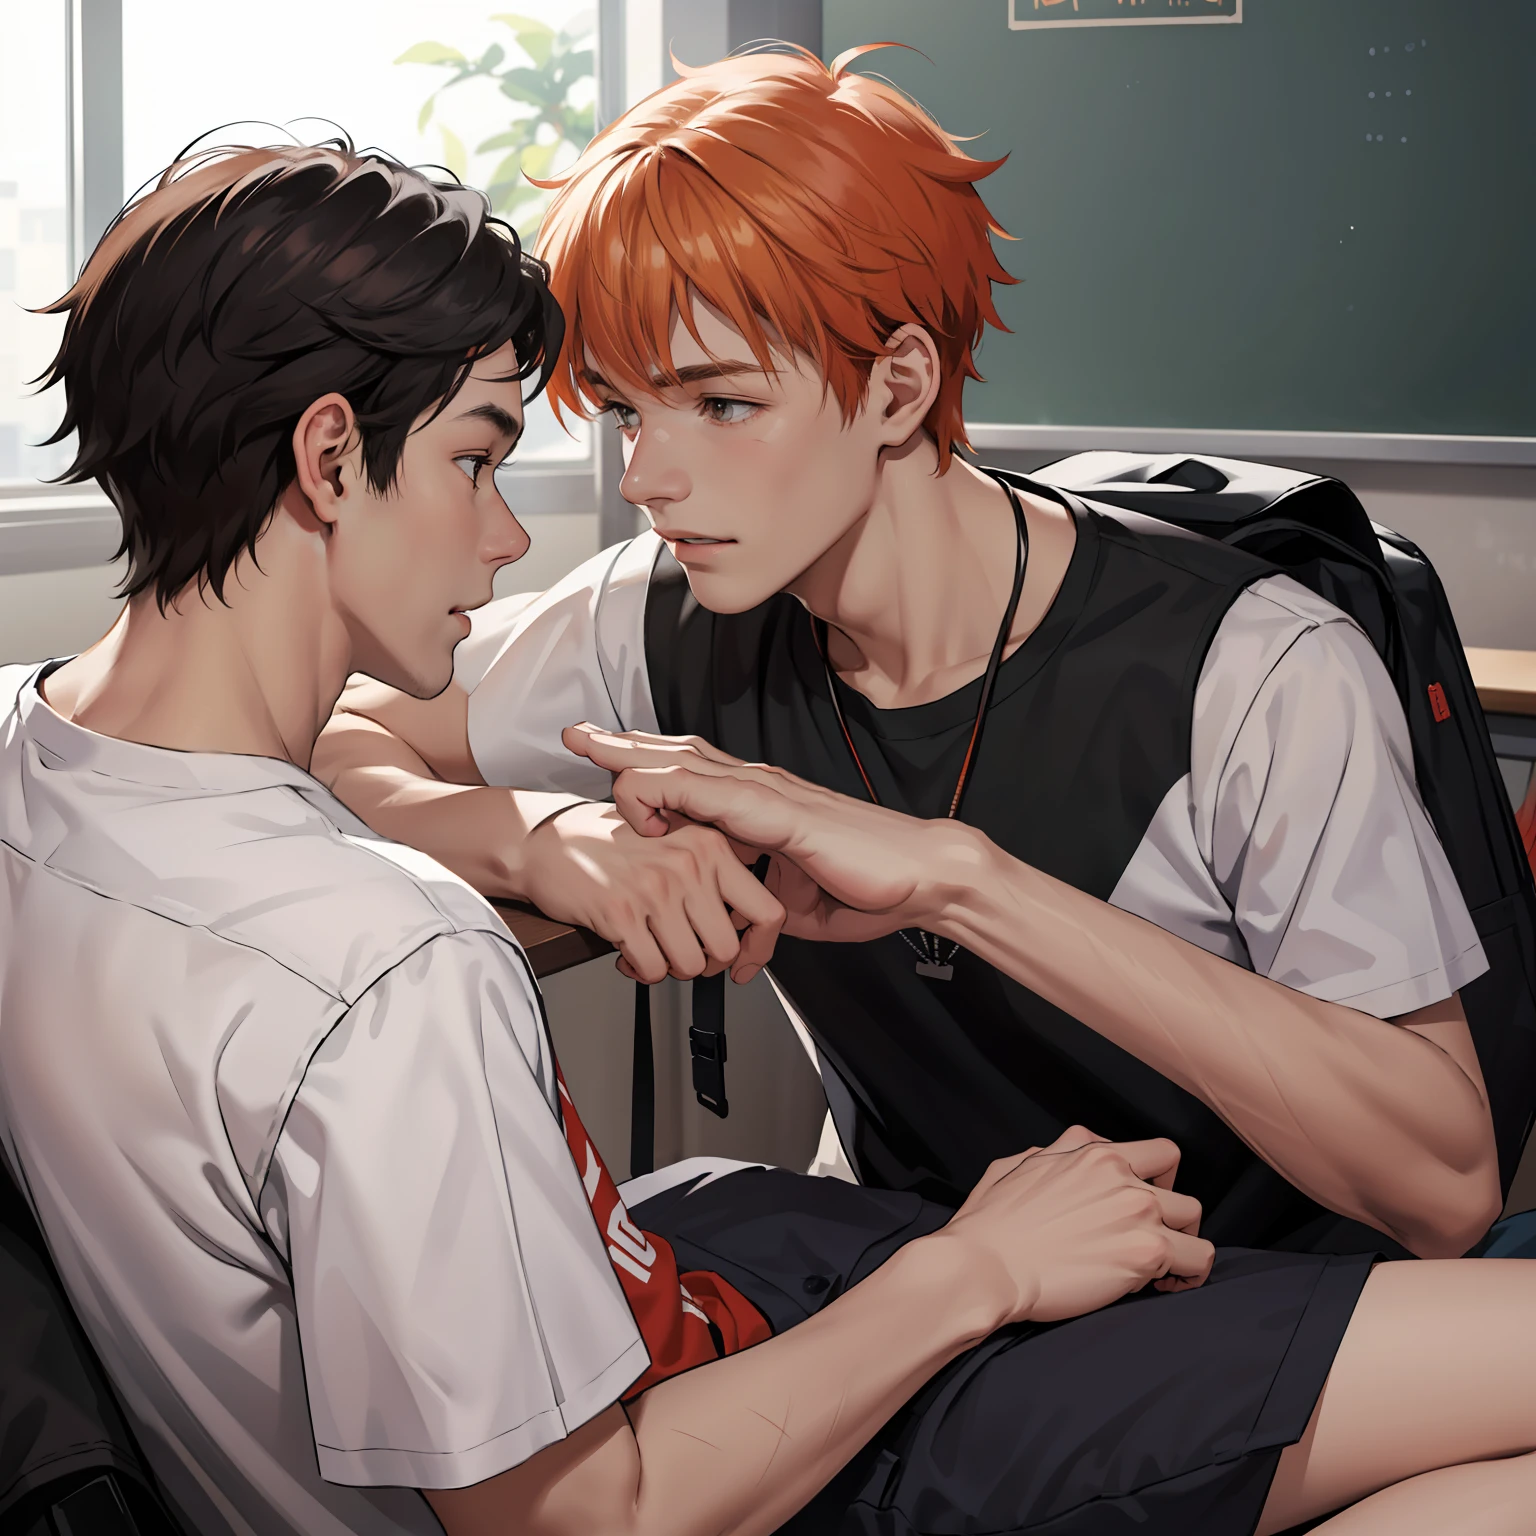 两个 15 岁的橙色头发的青少年朋友正在聊天, 他们聊, 他们在学校里聊天，他们分享一个秘密：他们几乎是兄弟的朋友。... (使用相同的字符)